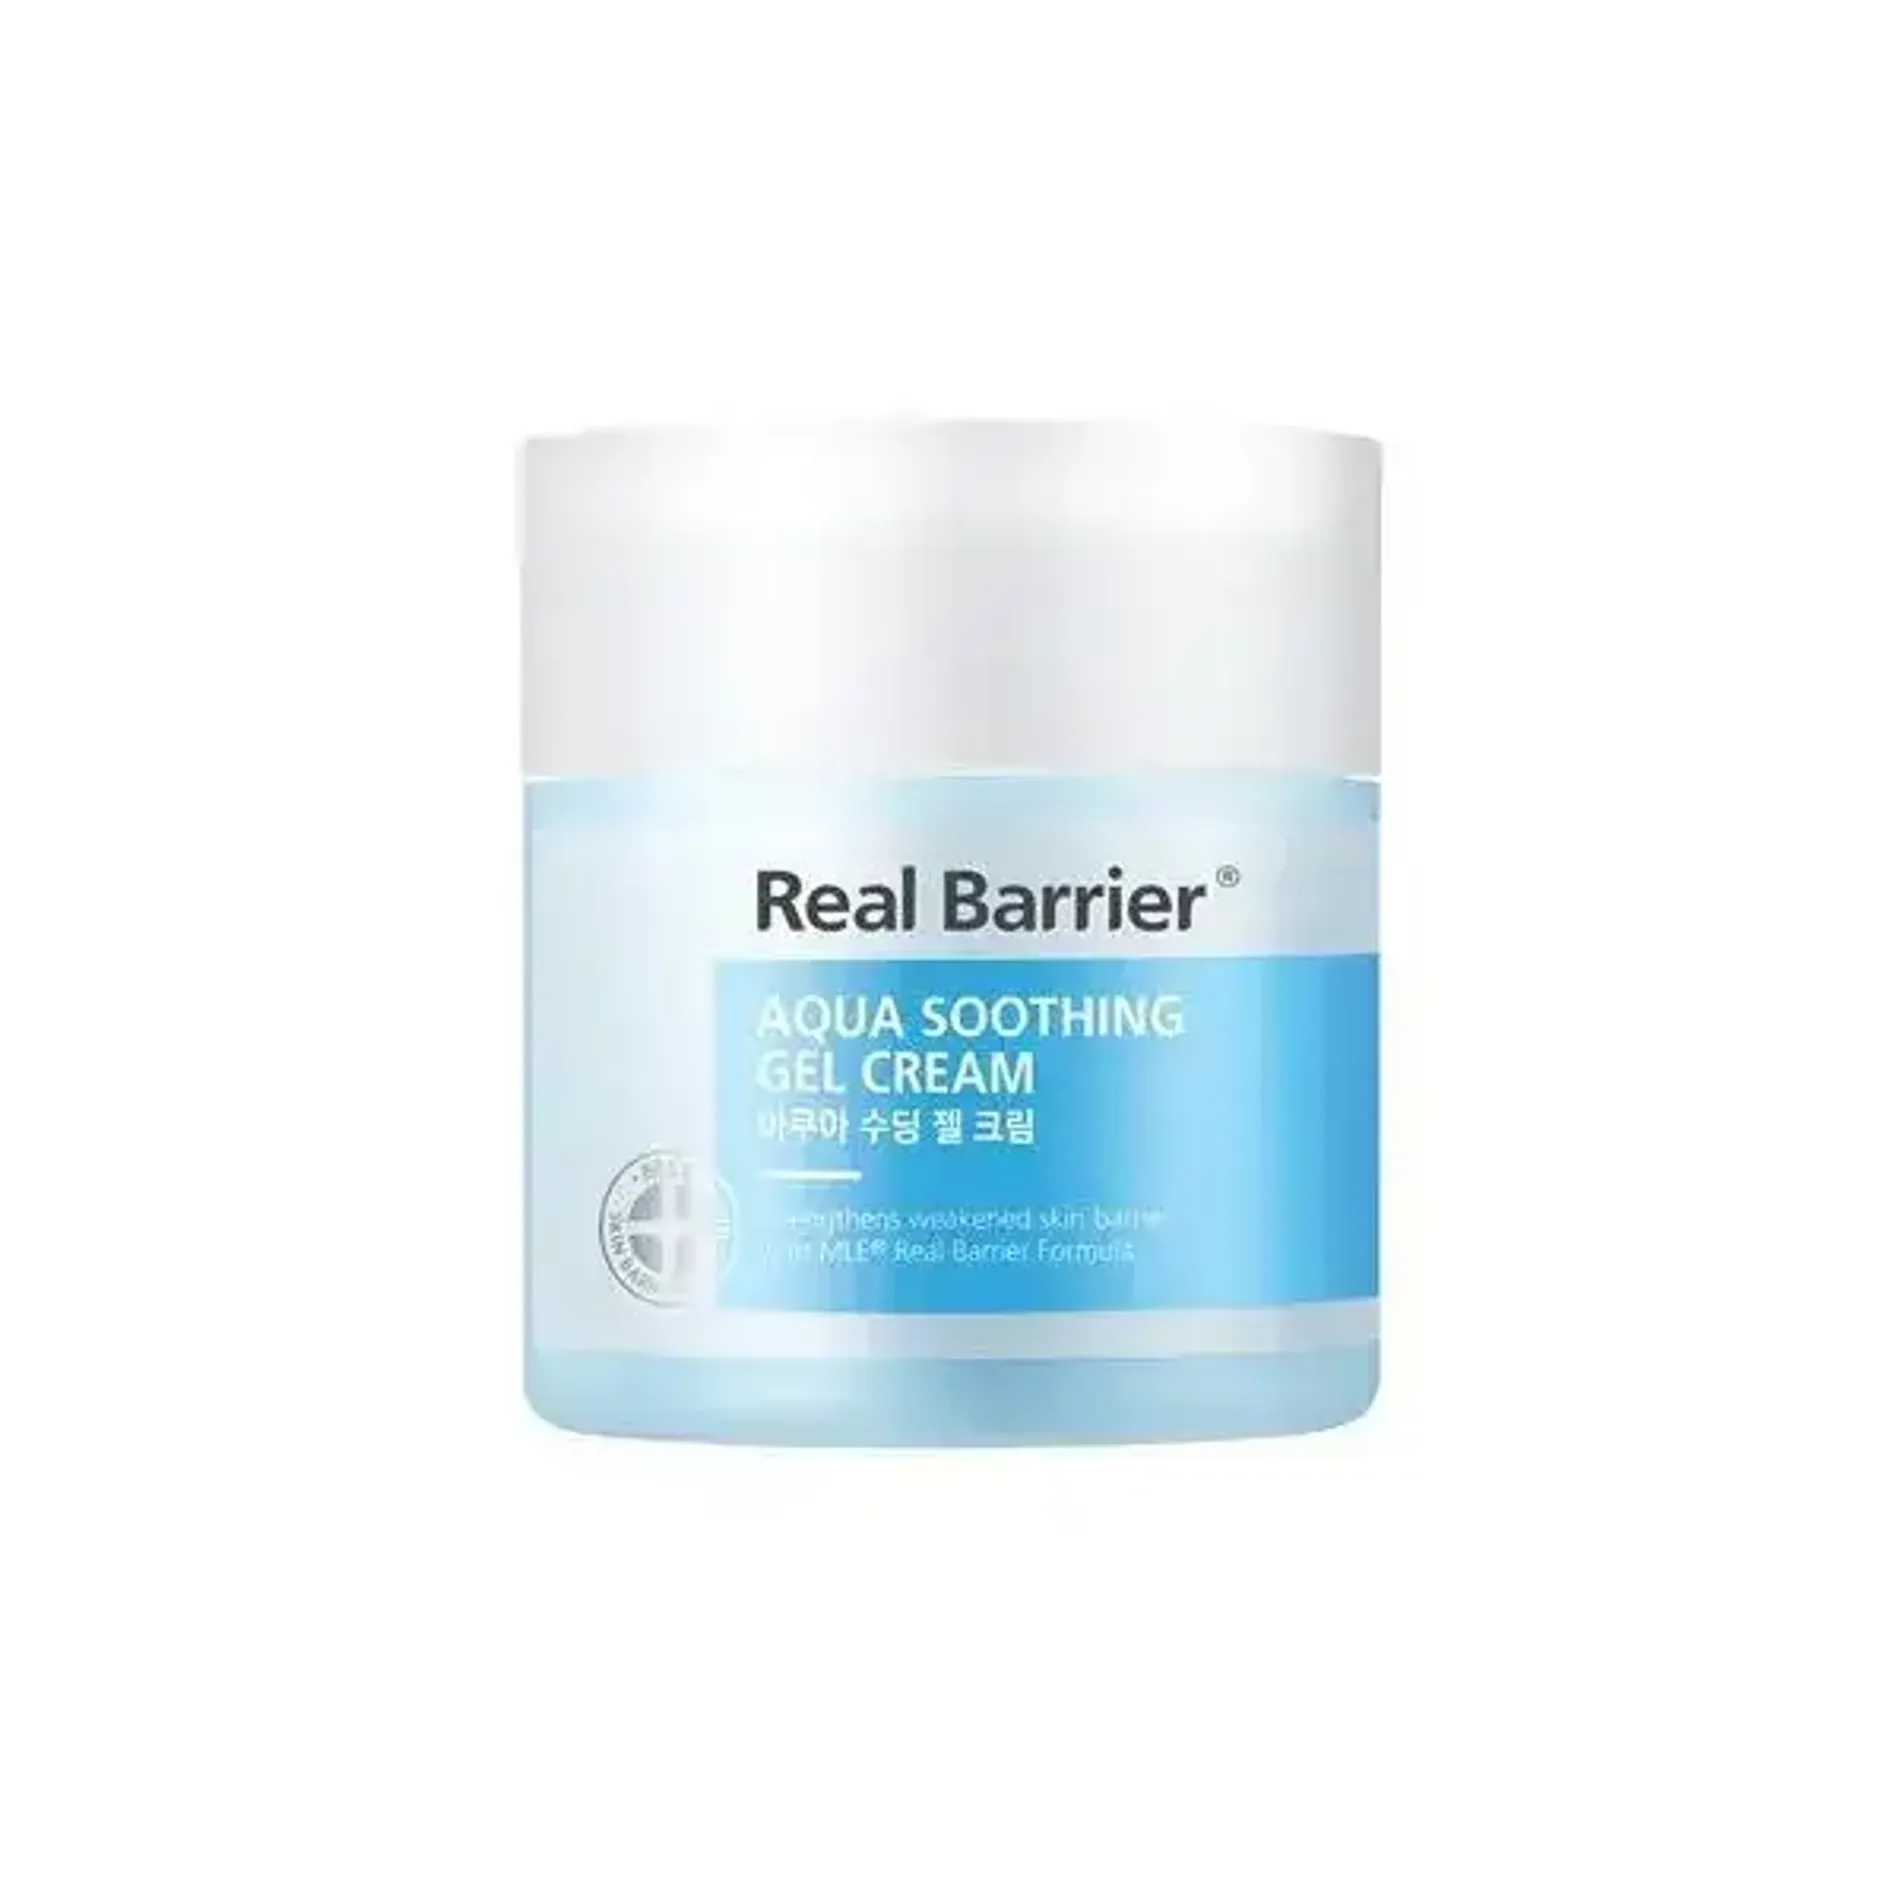 kem-duong-da-mat-real-barrier-aqua-soothing-gel-cream-50ml-2